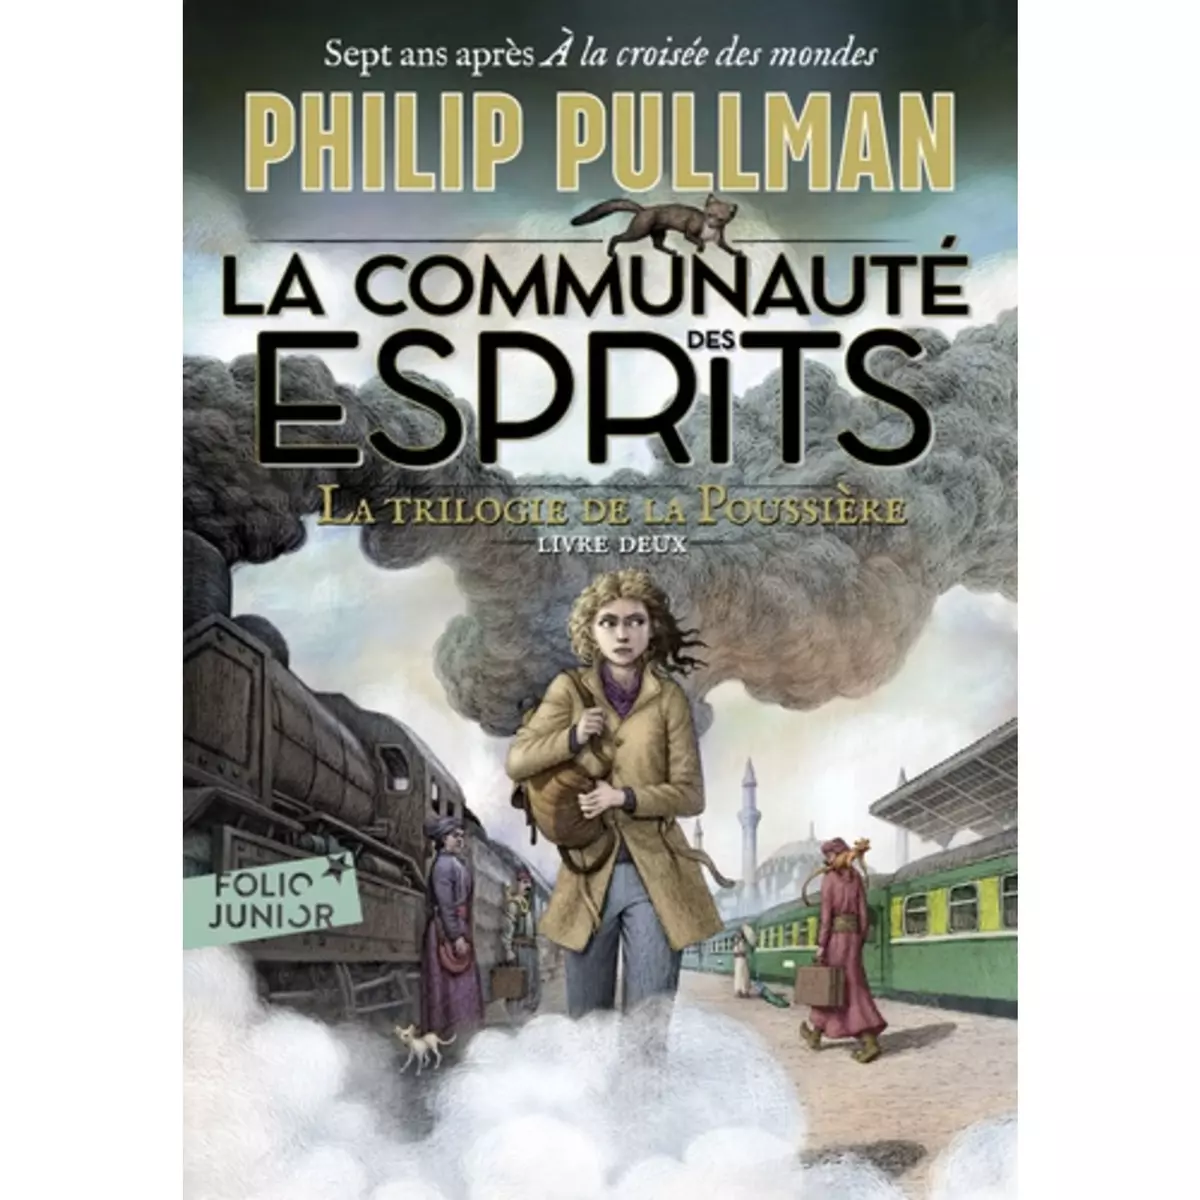  LA TRILOGIE DE LA POUSSIERE TOME 2 : LA COMMUNAUTE DES ESPRITS, Pullman Philip